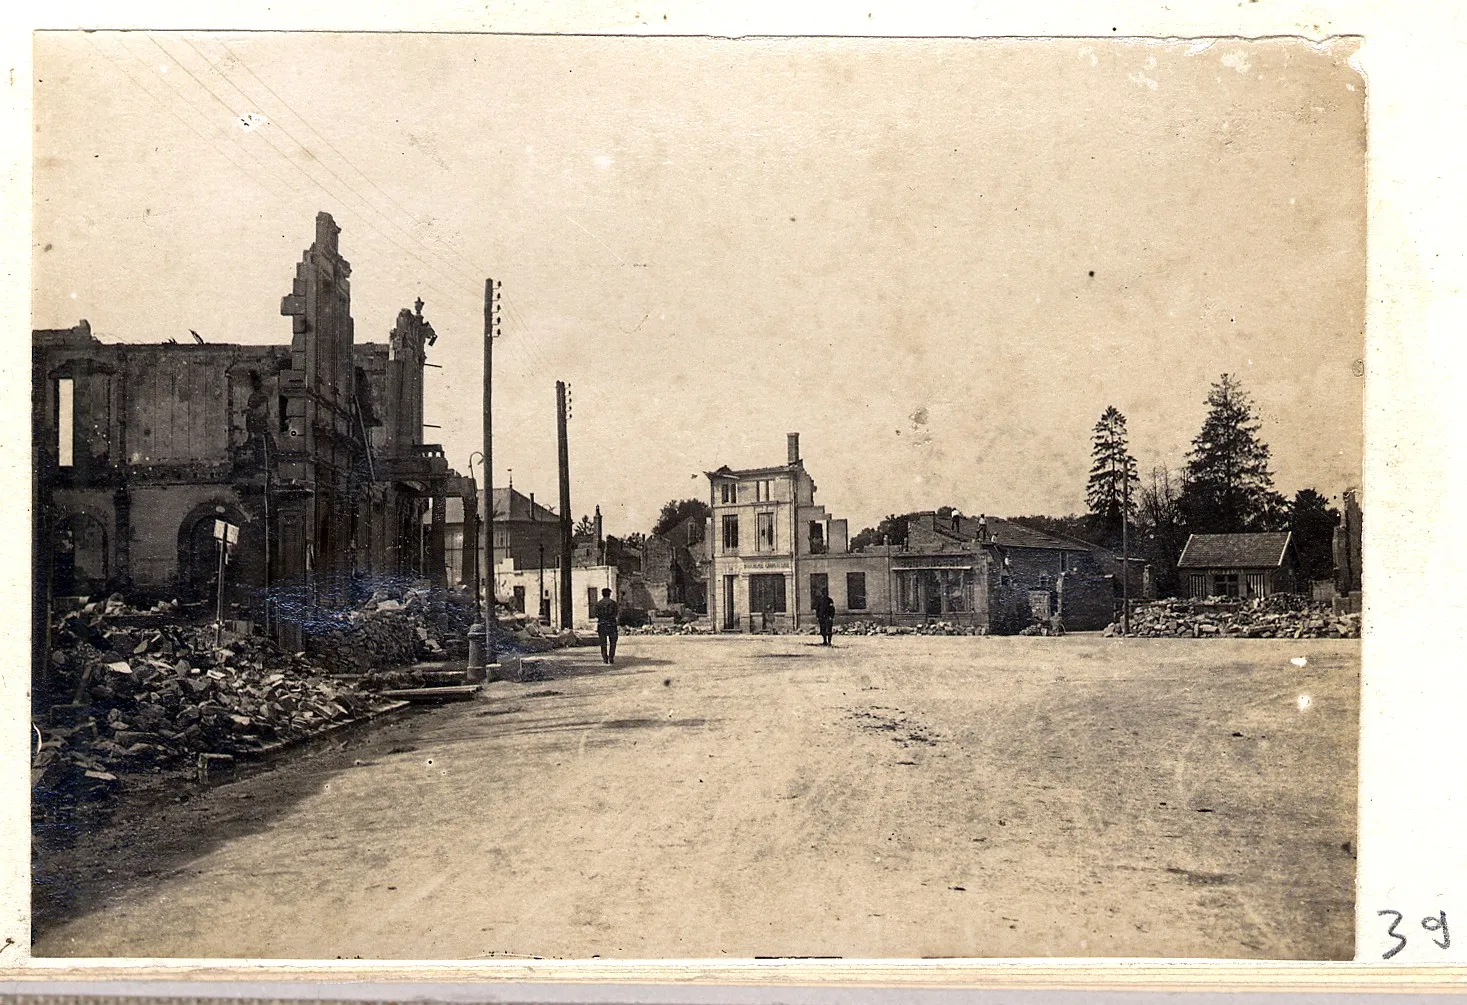 Photo showing: Vue d'une rue de Sermaize-les-Bains (Marne) bordée de maisons en ruine suite au bombardement de la ville.
1915.

Guerre 1914-1918.